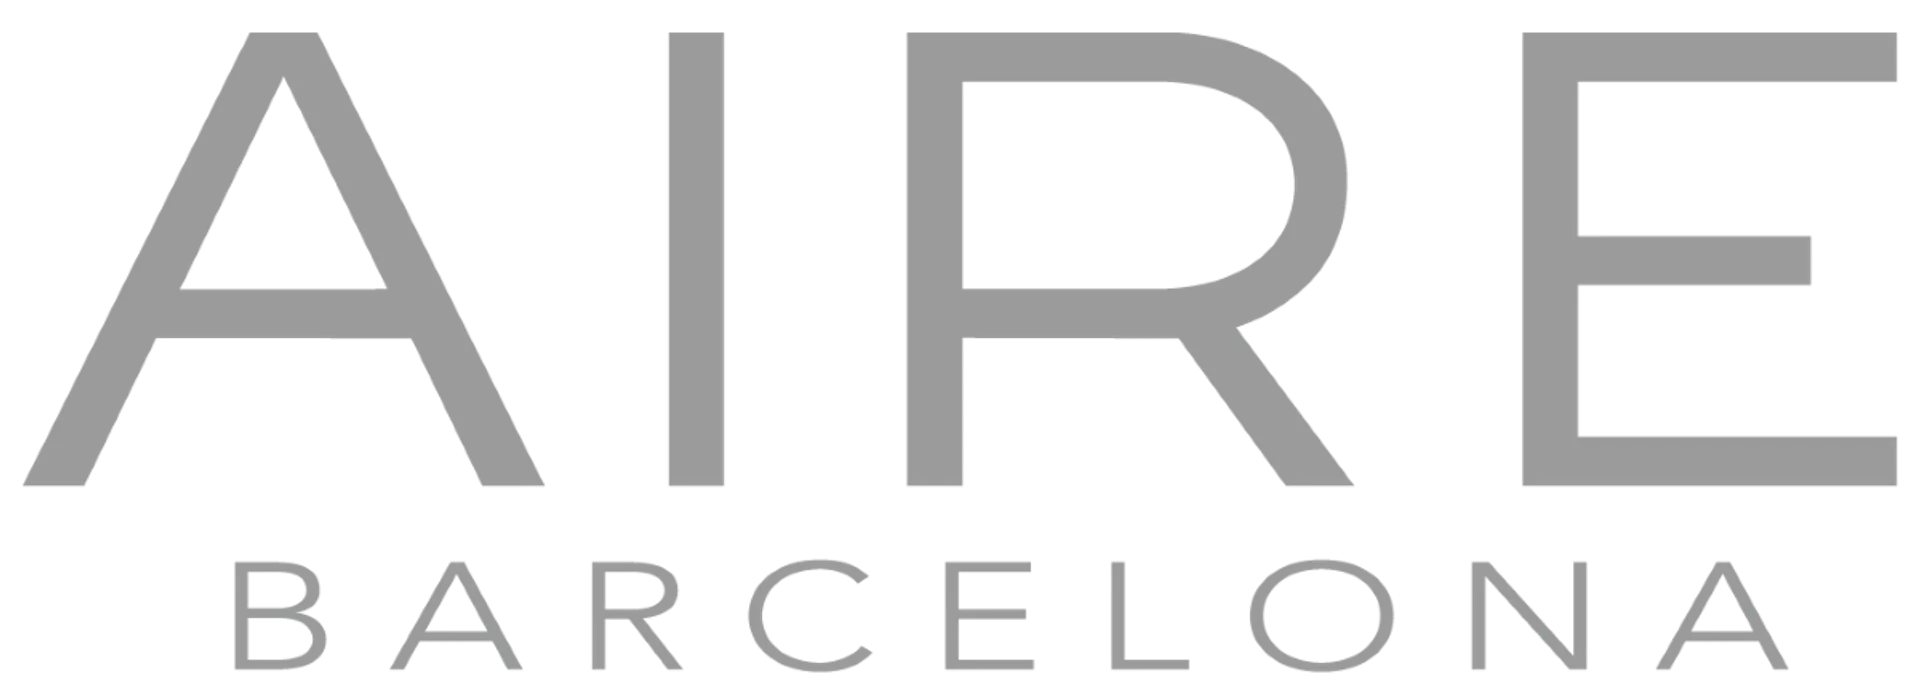 AIRE BARCELONA logo de catálogo